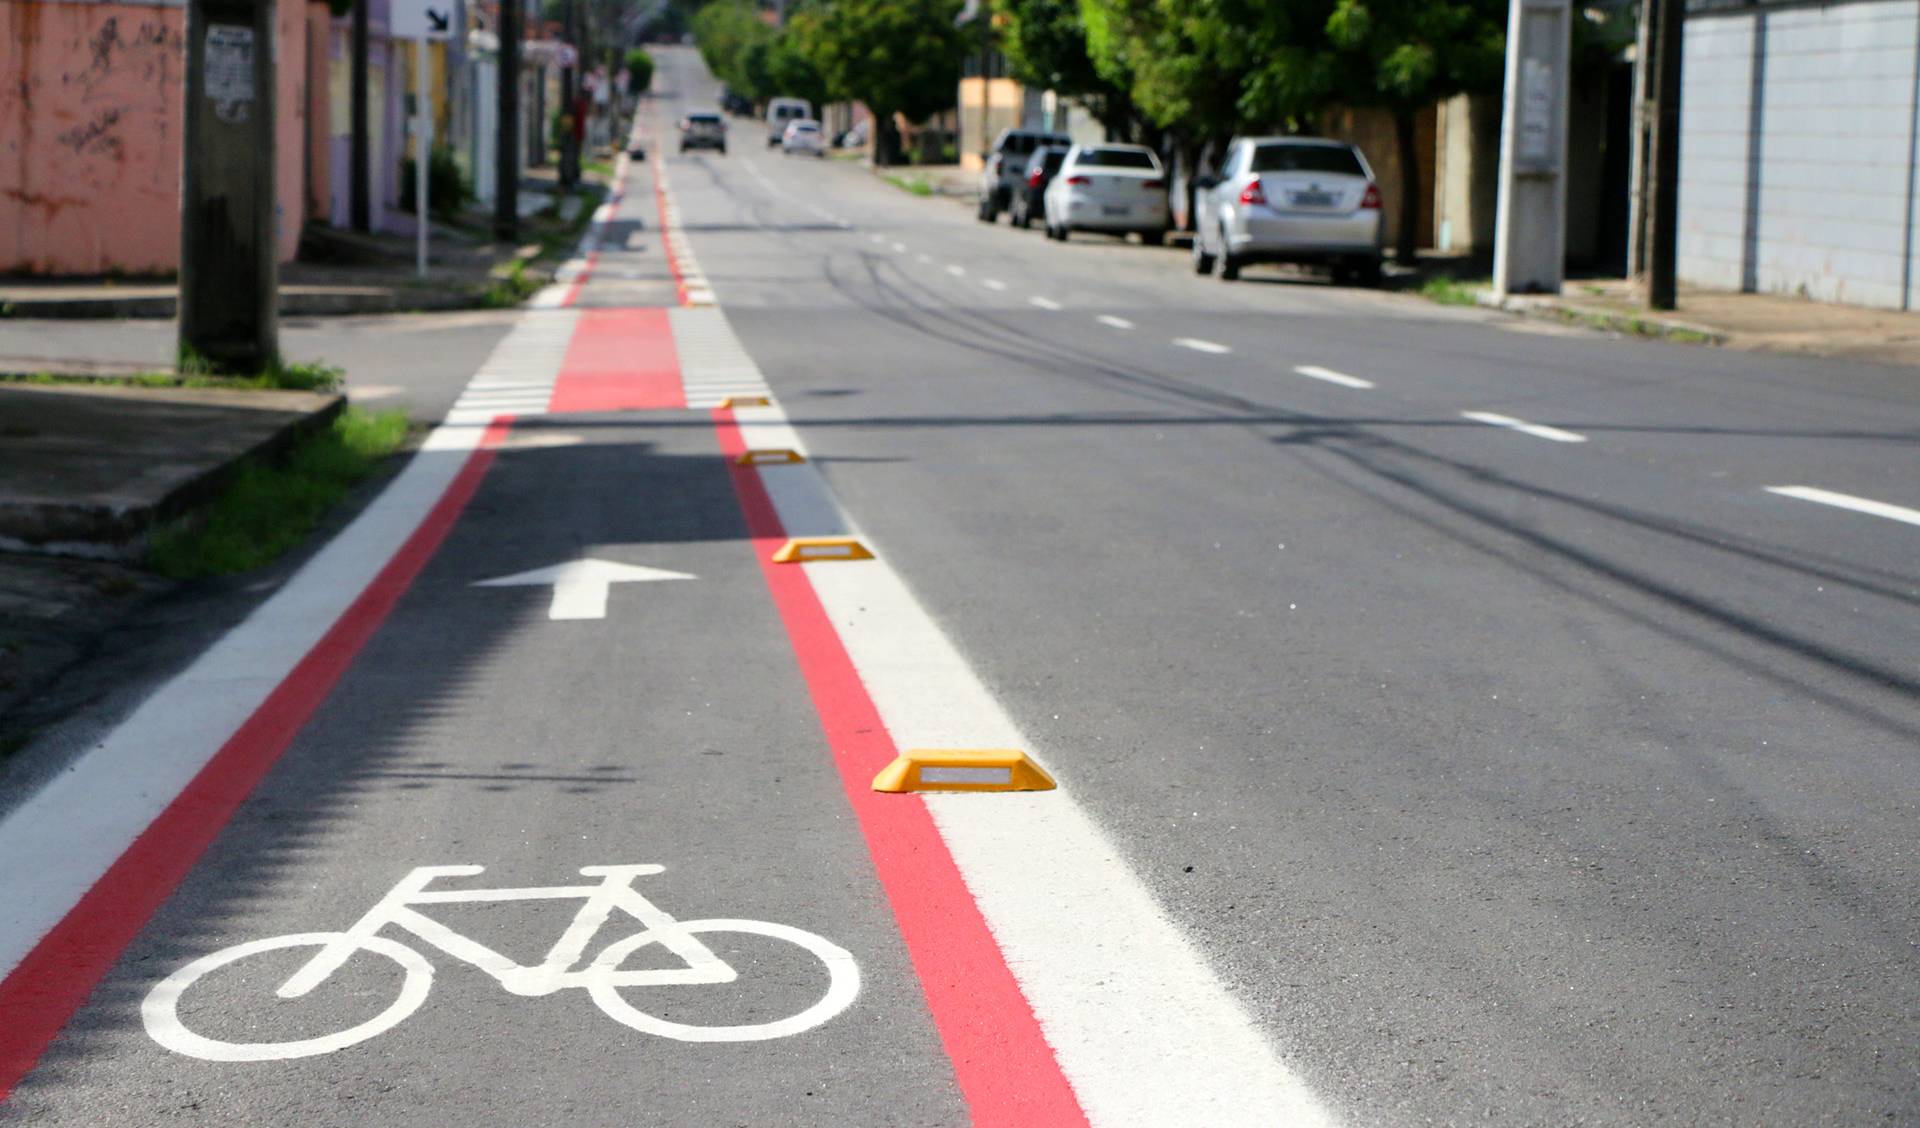 a imagem mostra a sinalização de uma ciclofaixa, que consiste em linhas retas brancas e vermelhas, demarcando o espaço na lateral da rua e do desenho branco de uma bicicleta